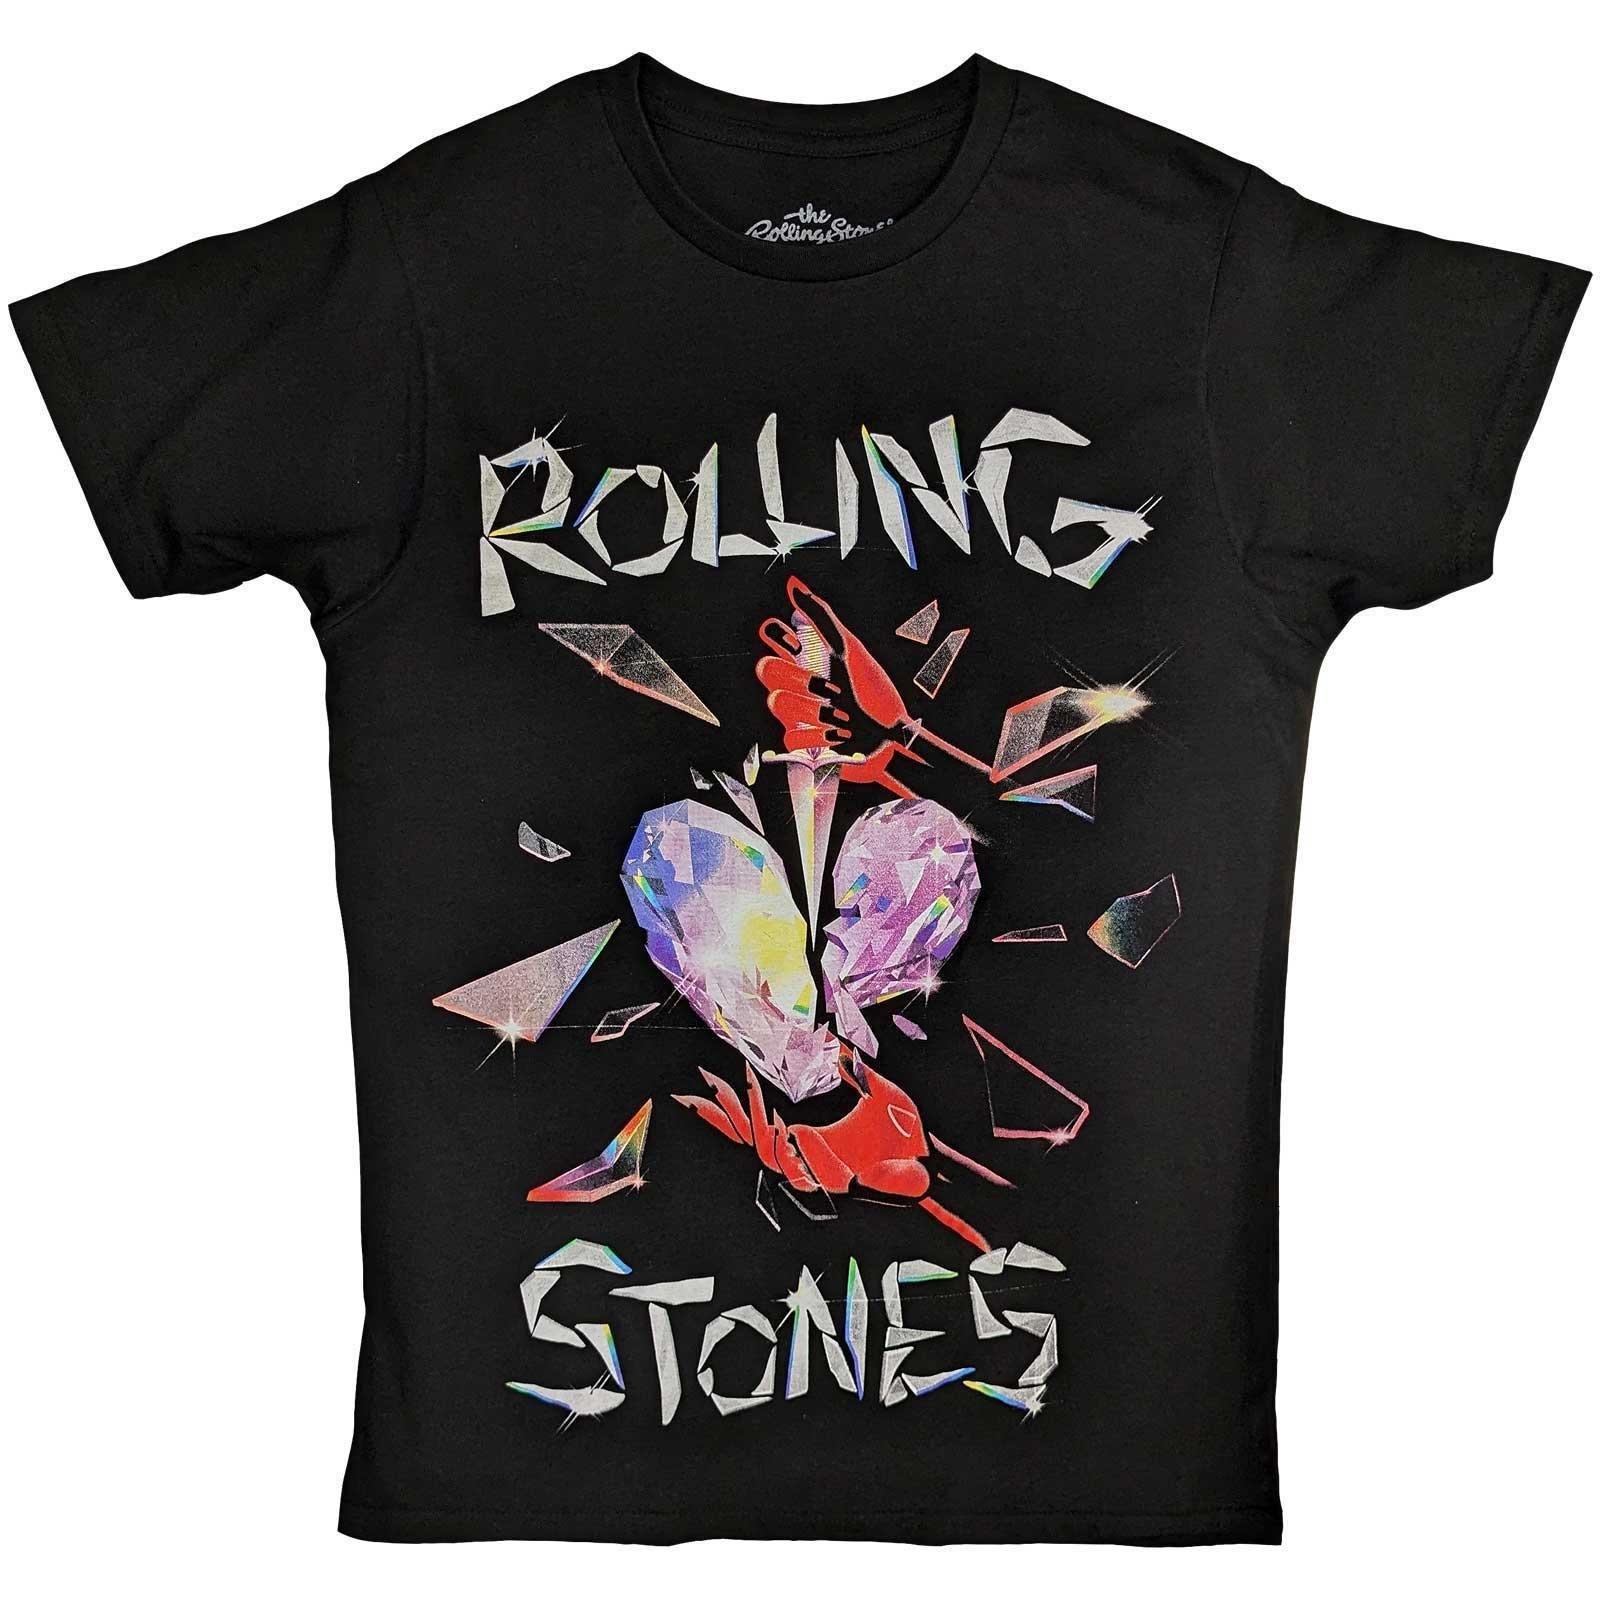 Hackney Diamonds Tshirt Herren Schwarz L von The Rolling Stones